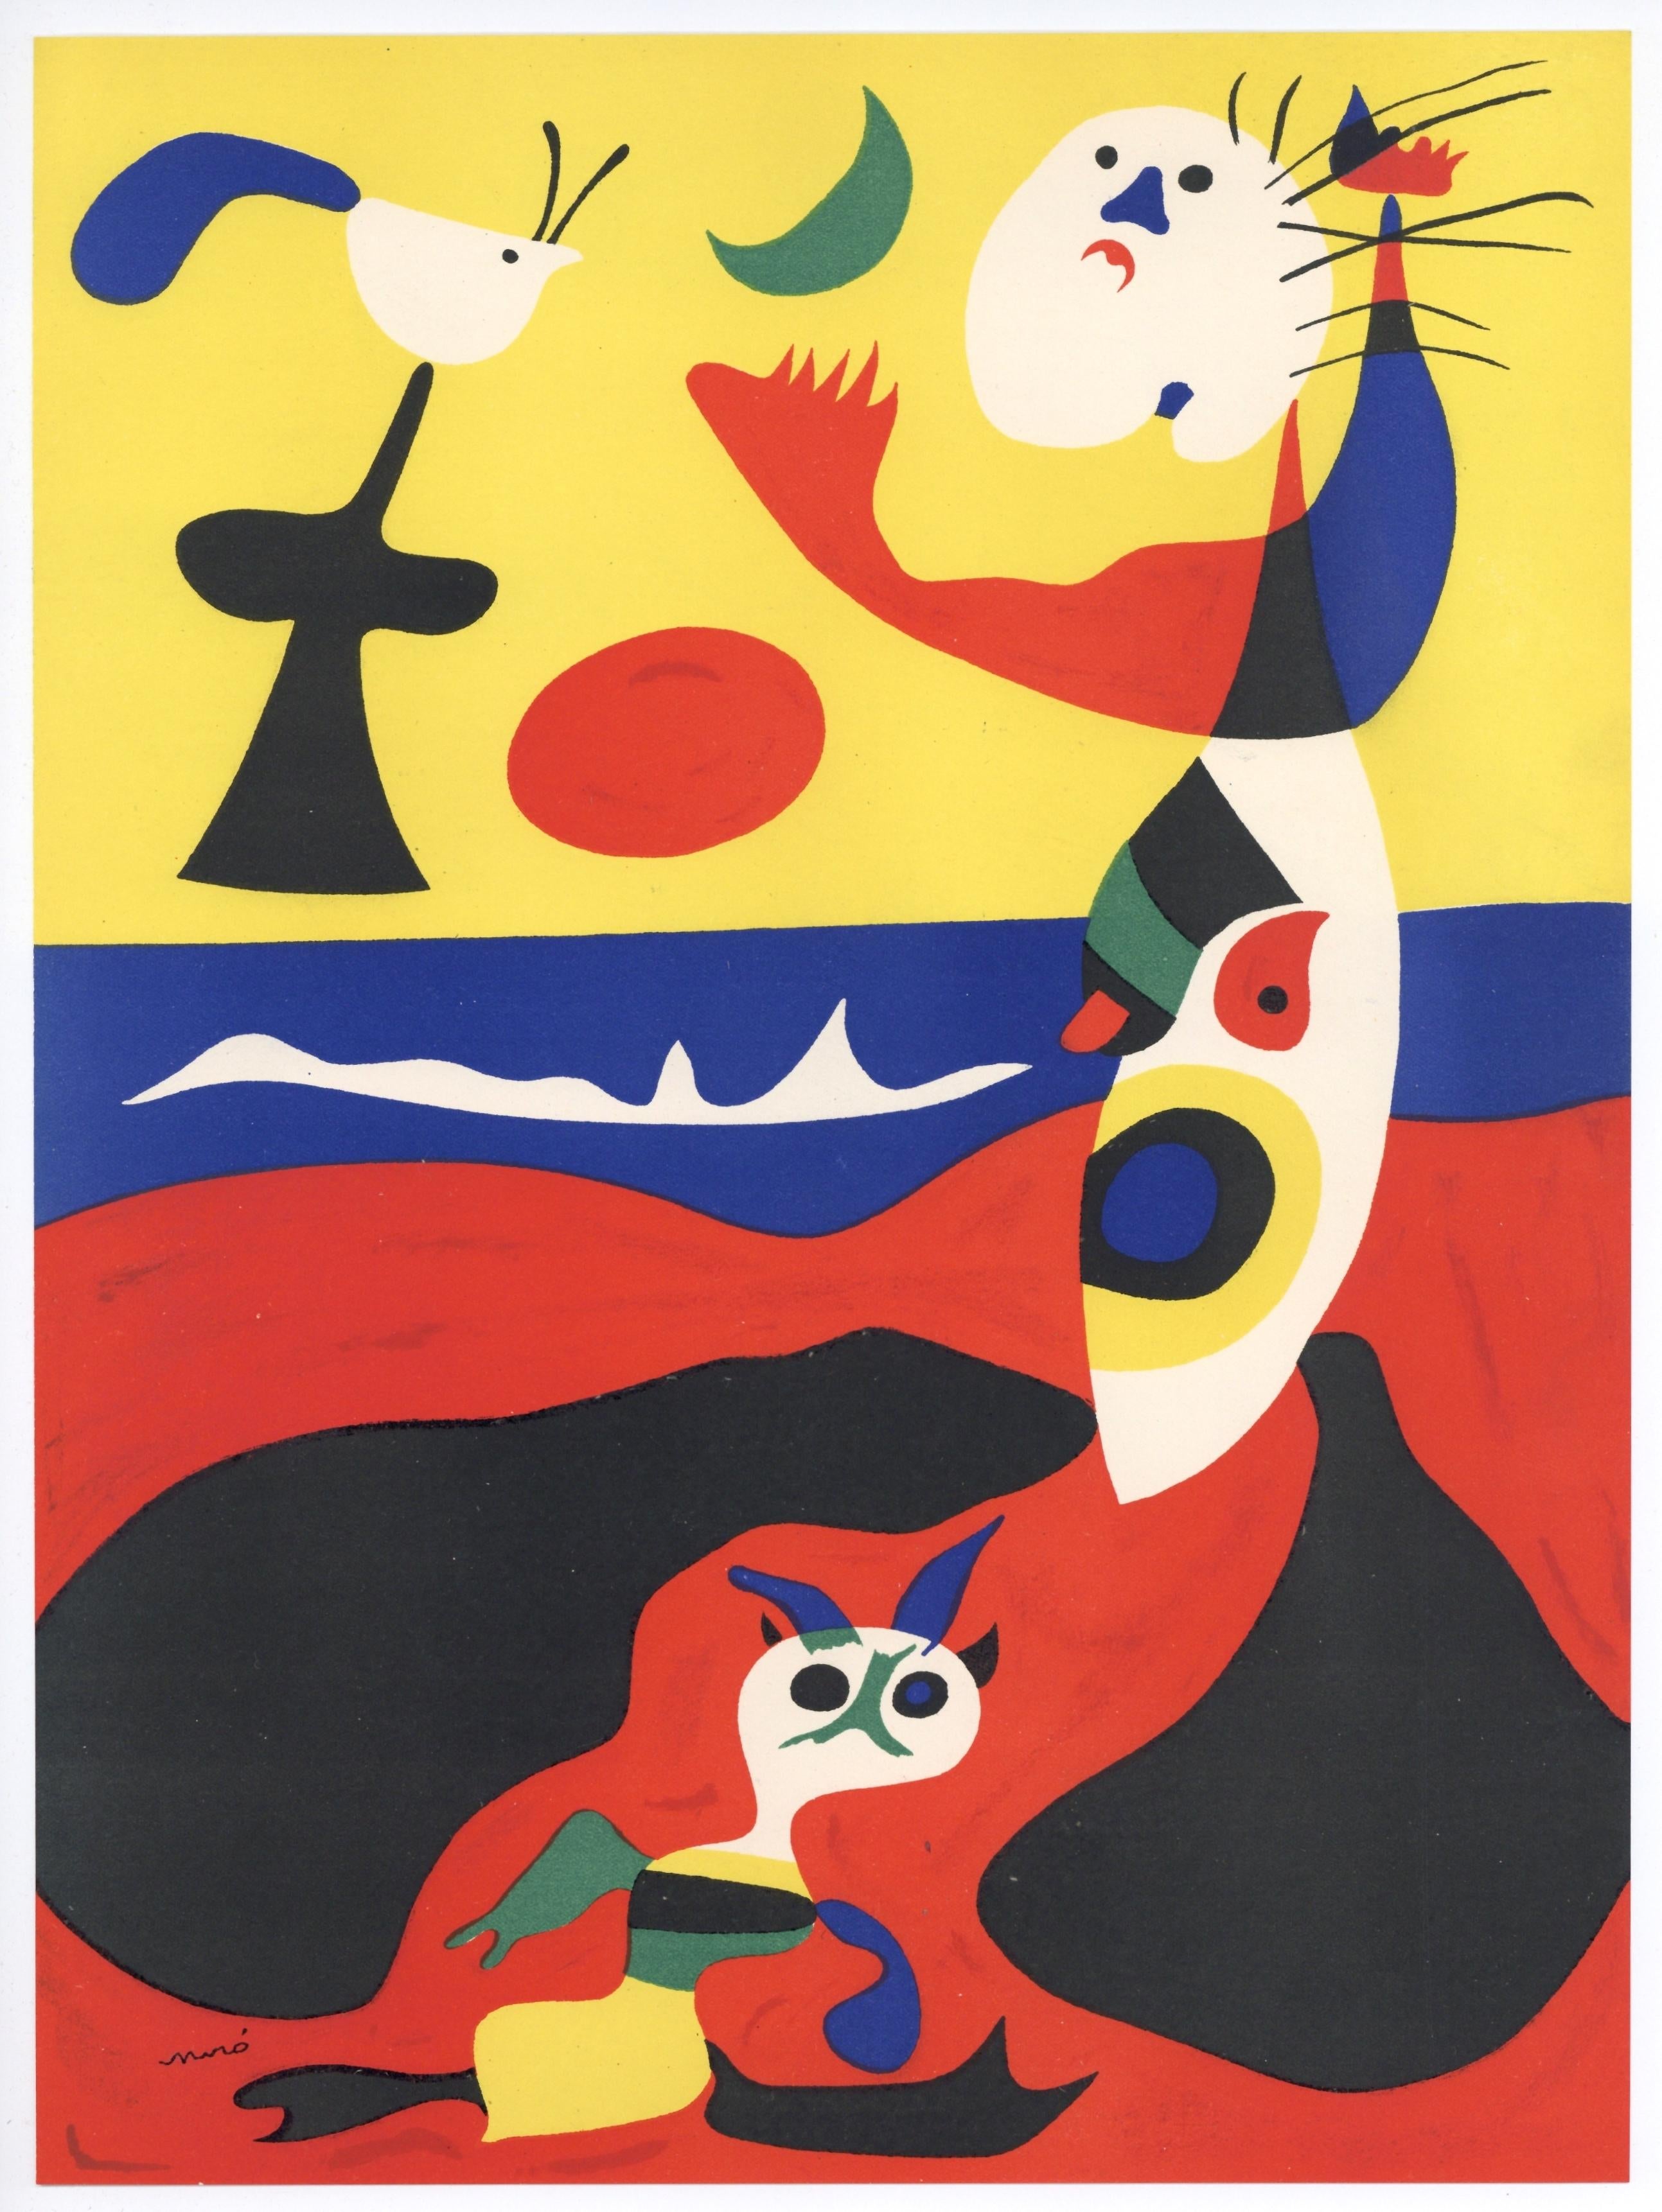 "L'Ete" - Print by Joan Miró